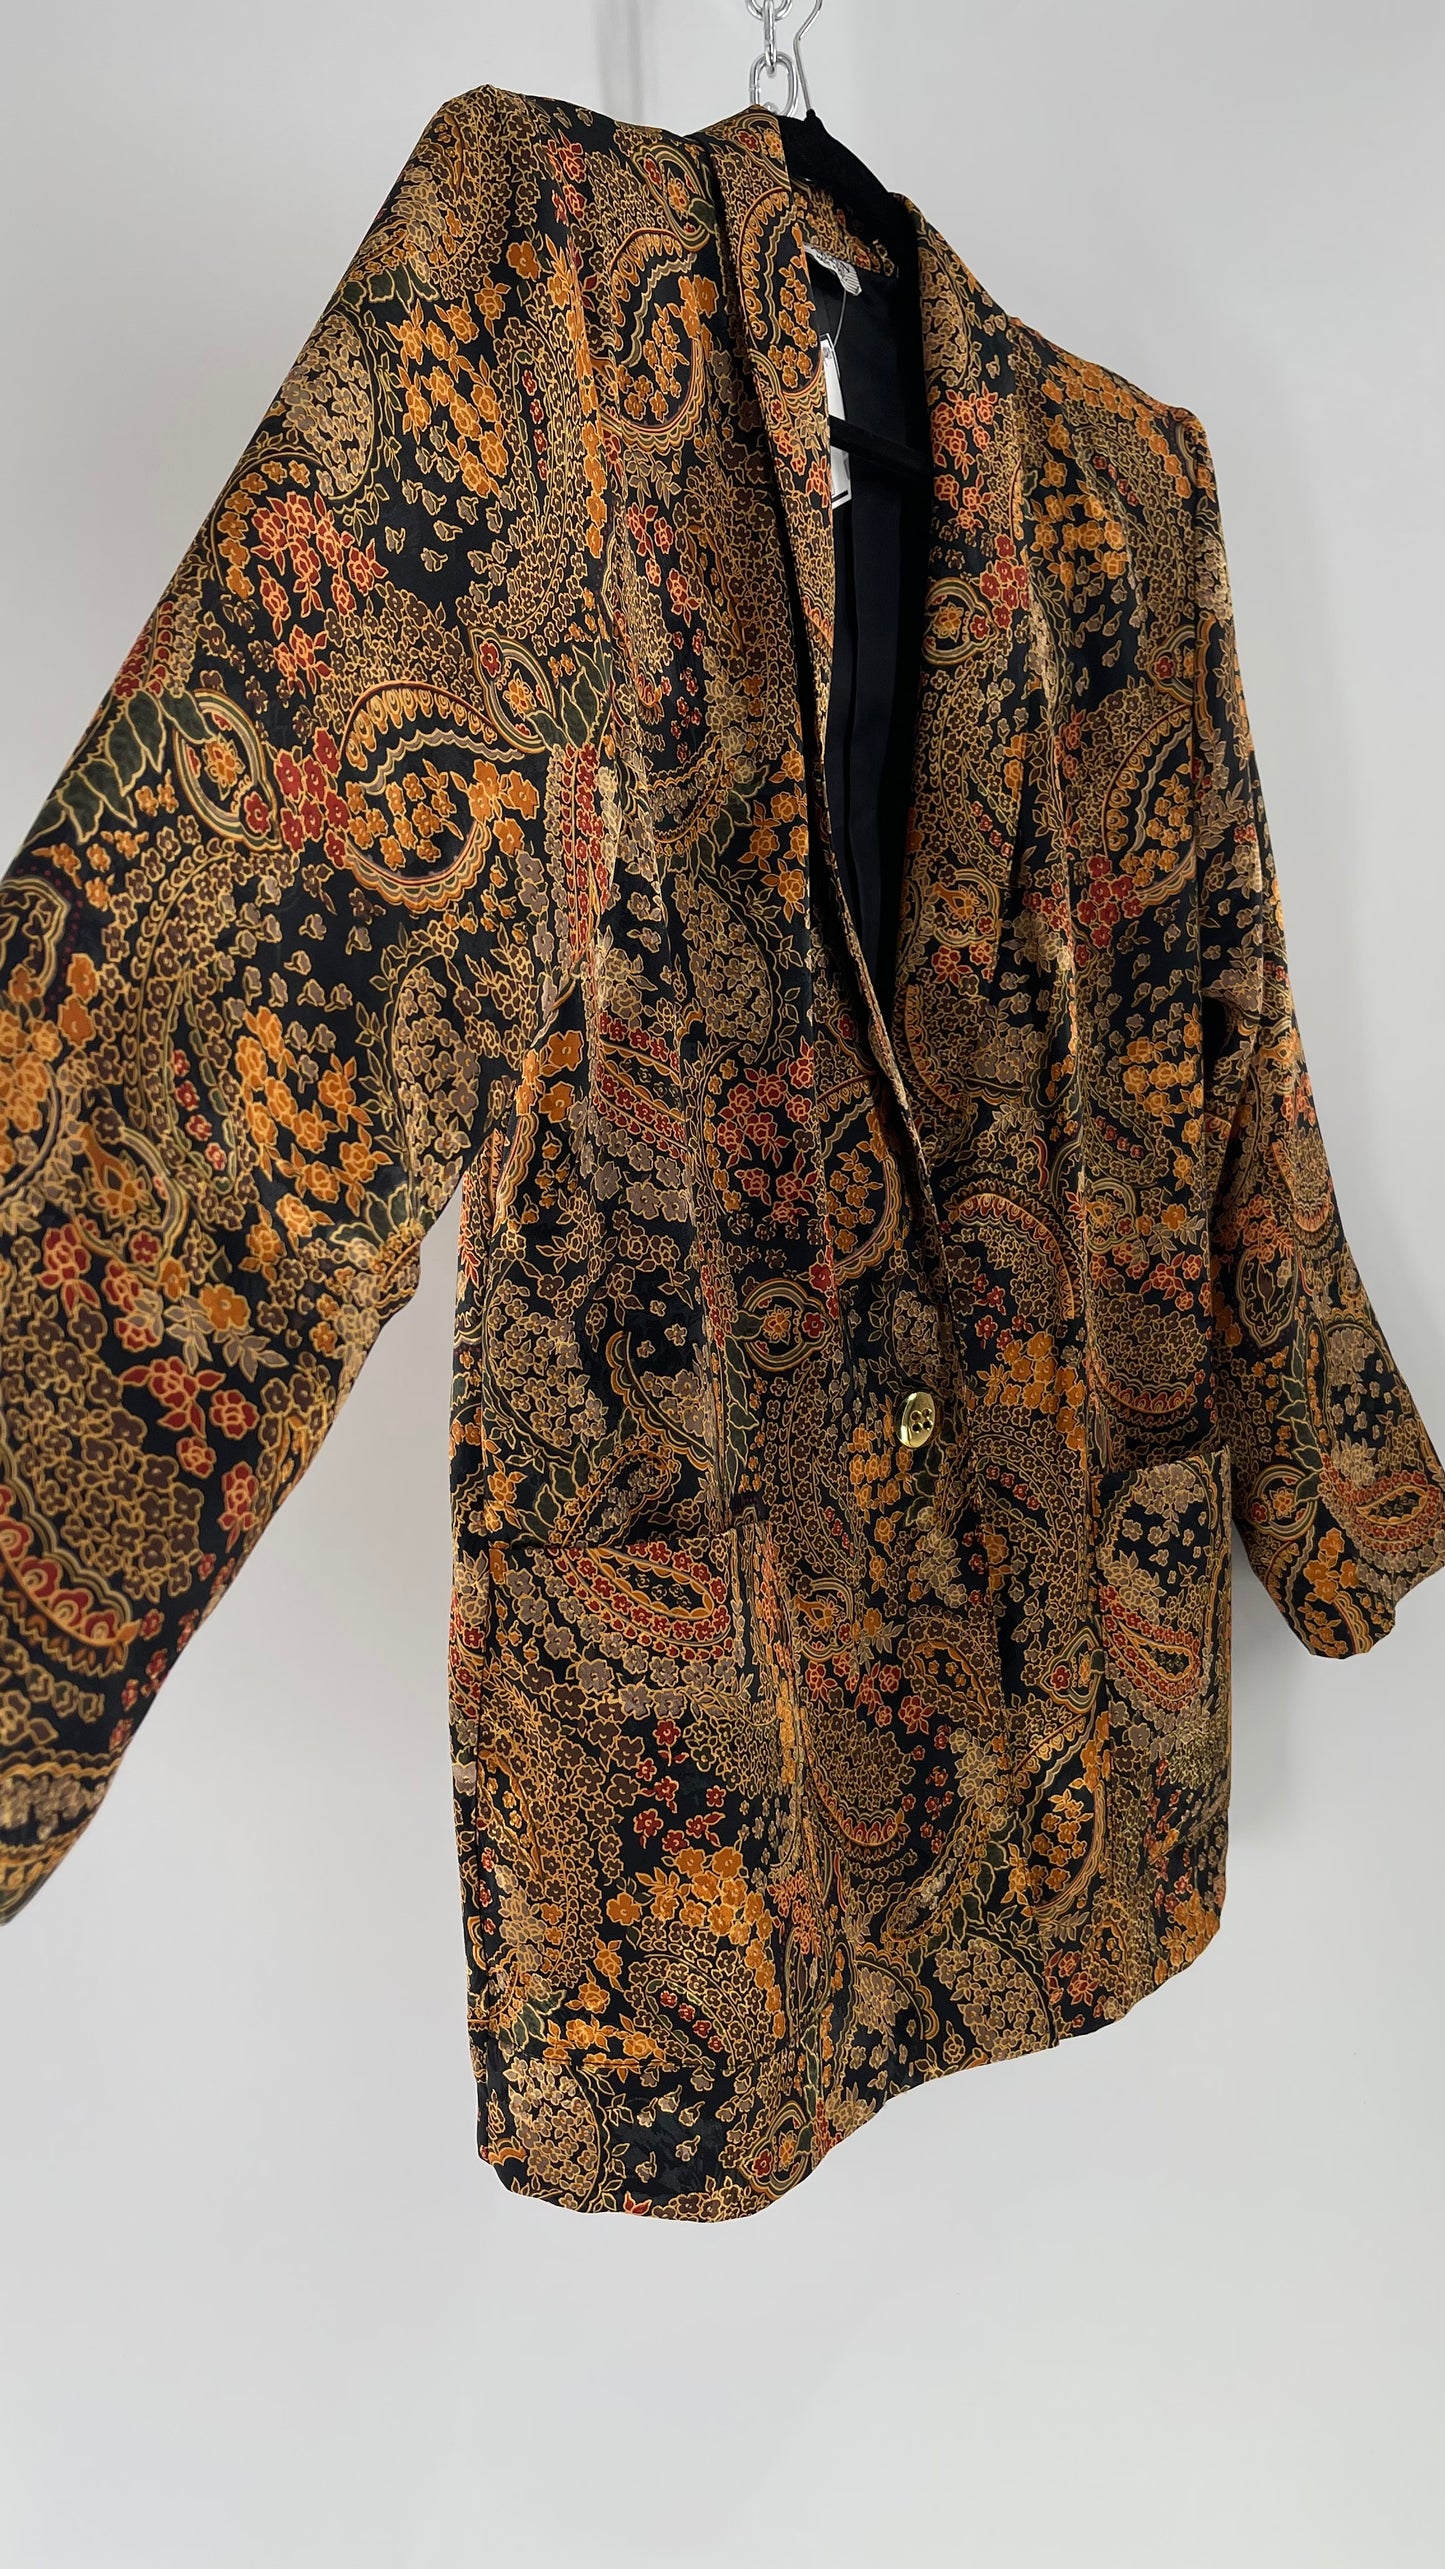 Vintage Kensington 100% Silk Blazer (Medium)